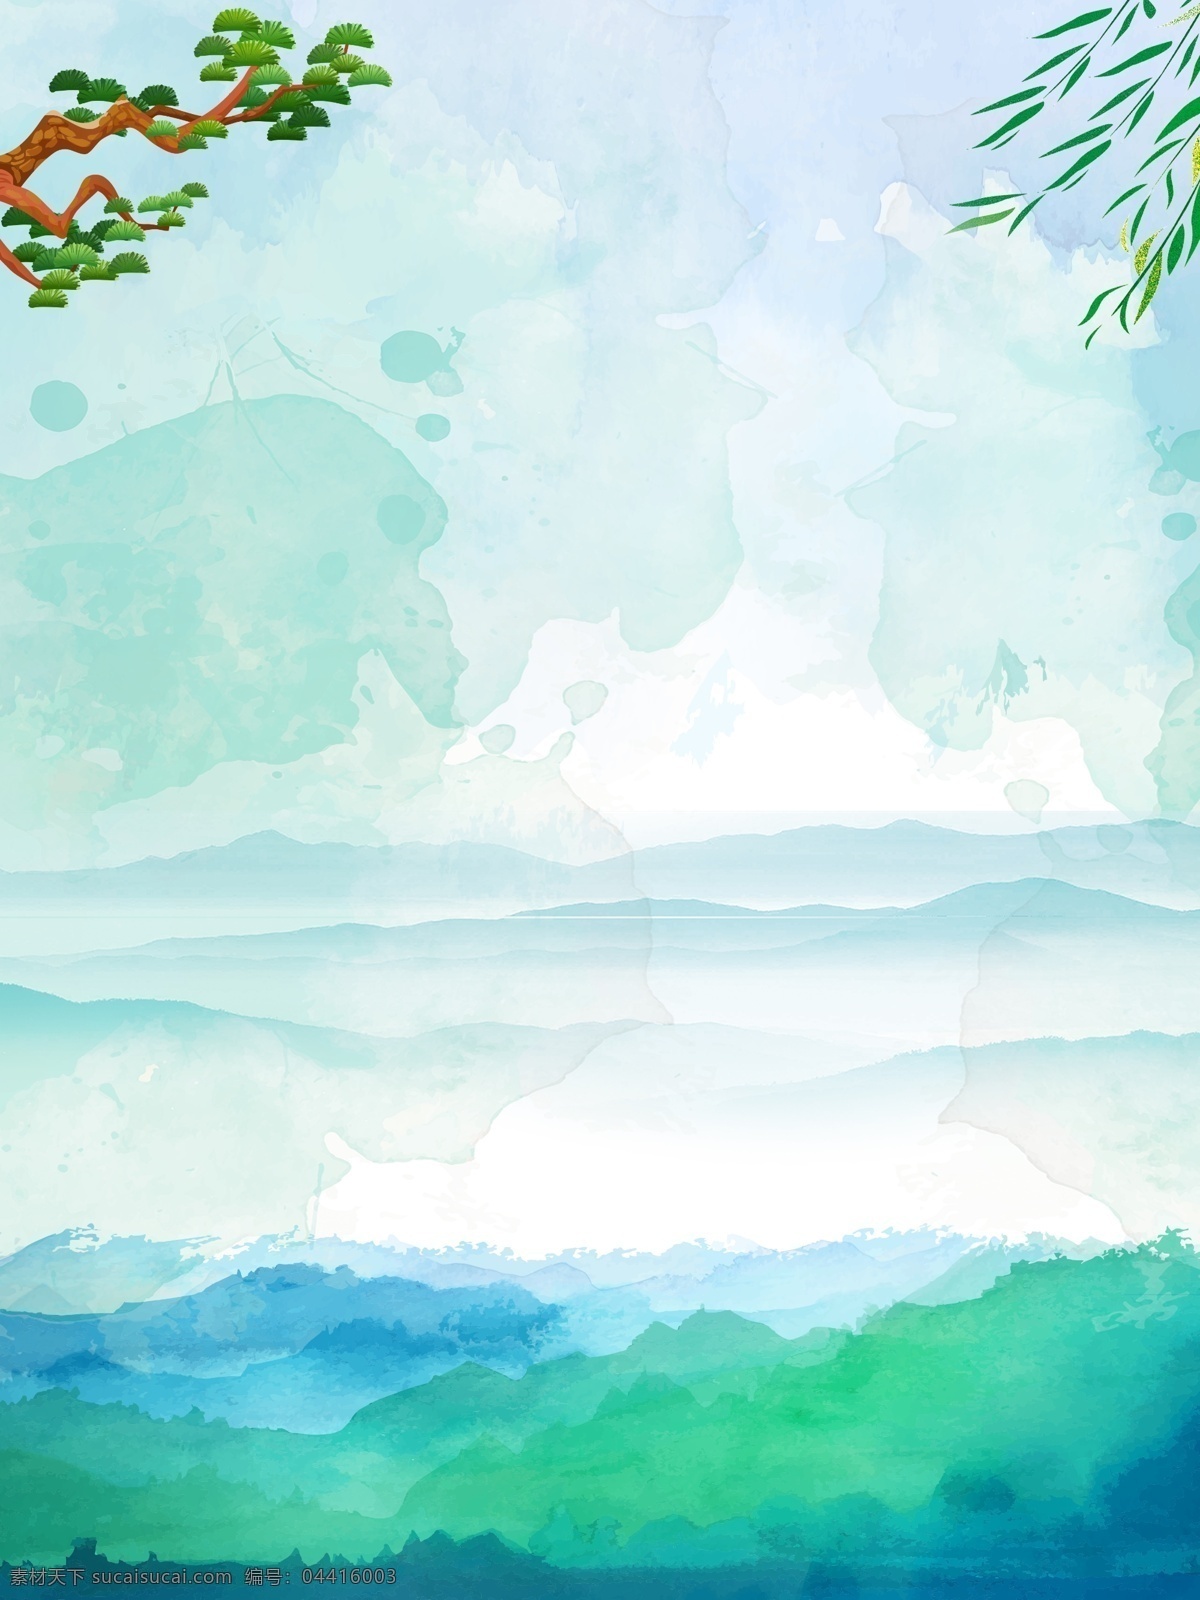 唯美 清新 山水风景 插画 背景 植物背景 草地背景 绿地背景 蓝天白云 叶子 河边